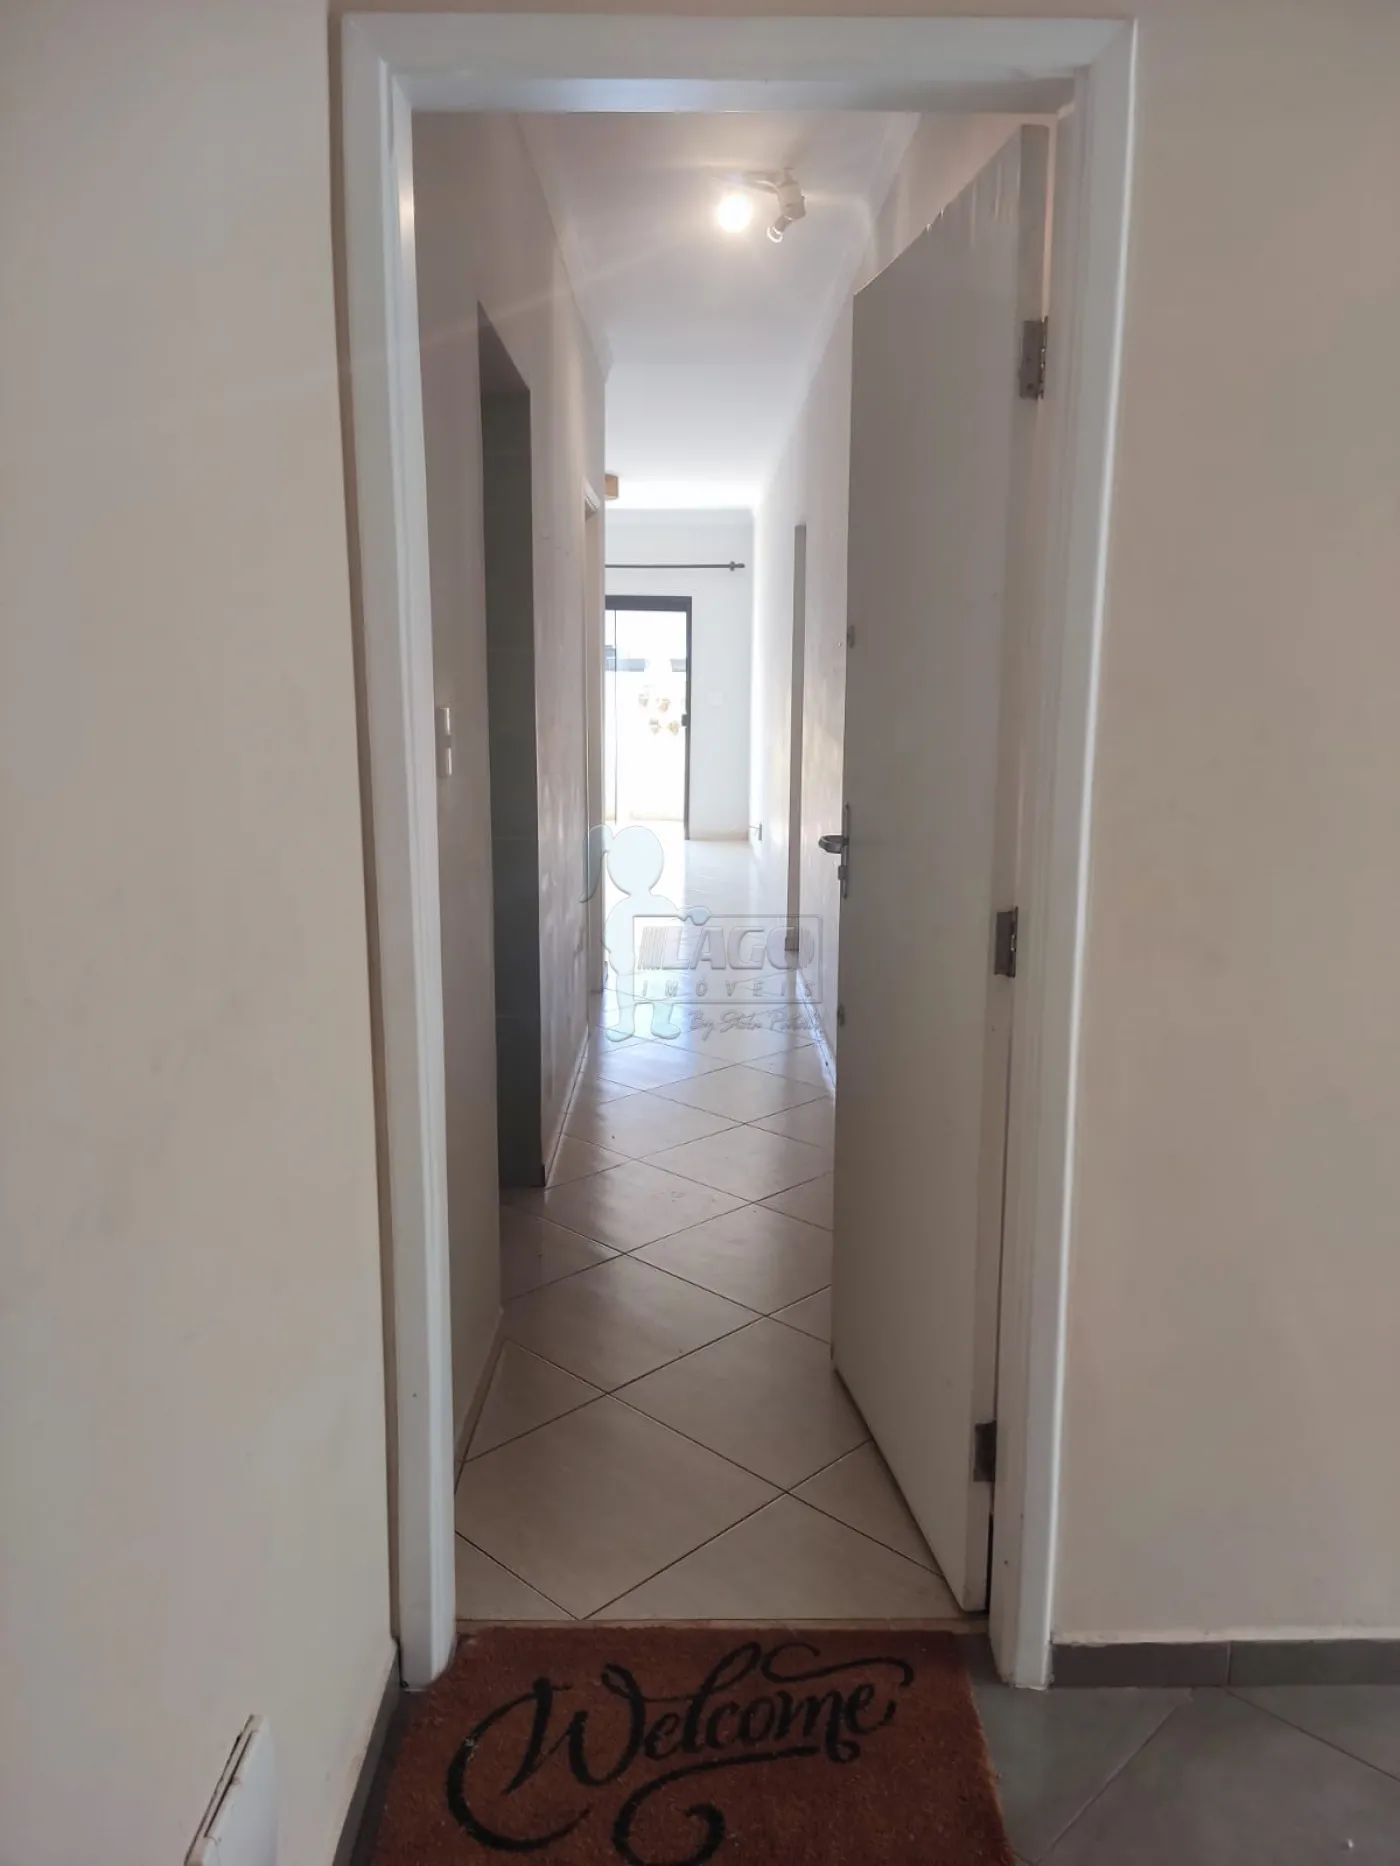 Alugar Apartamento / Padrão em Ribeirão Preto R$ 2.200,00 - Foto 1